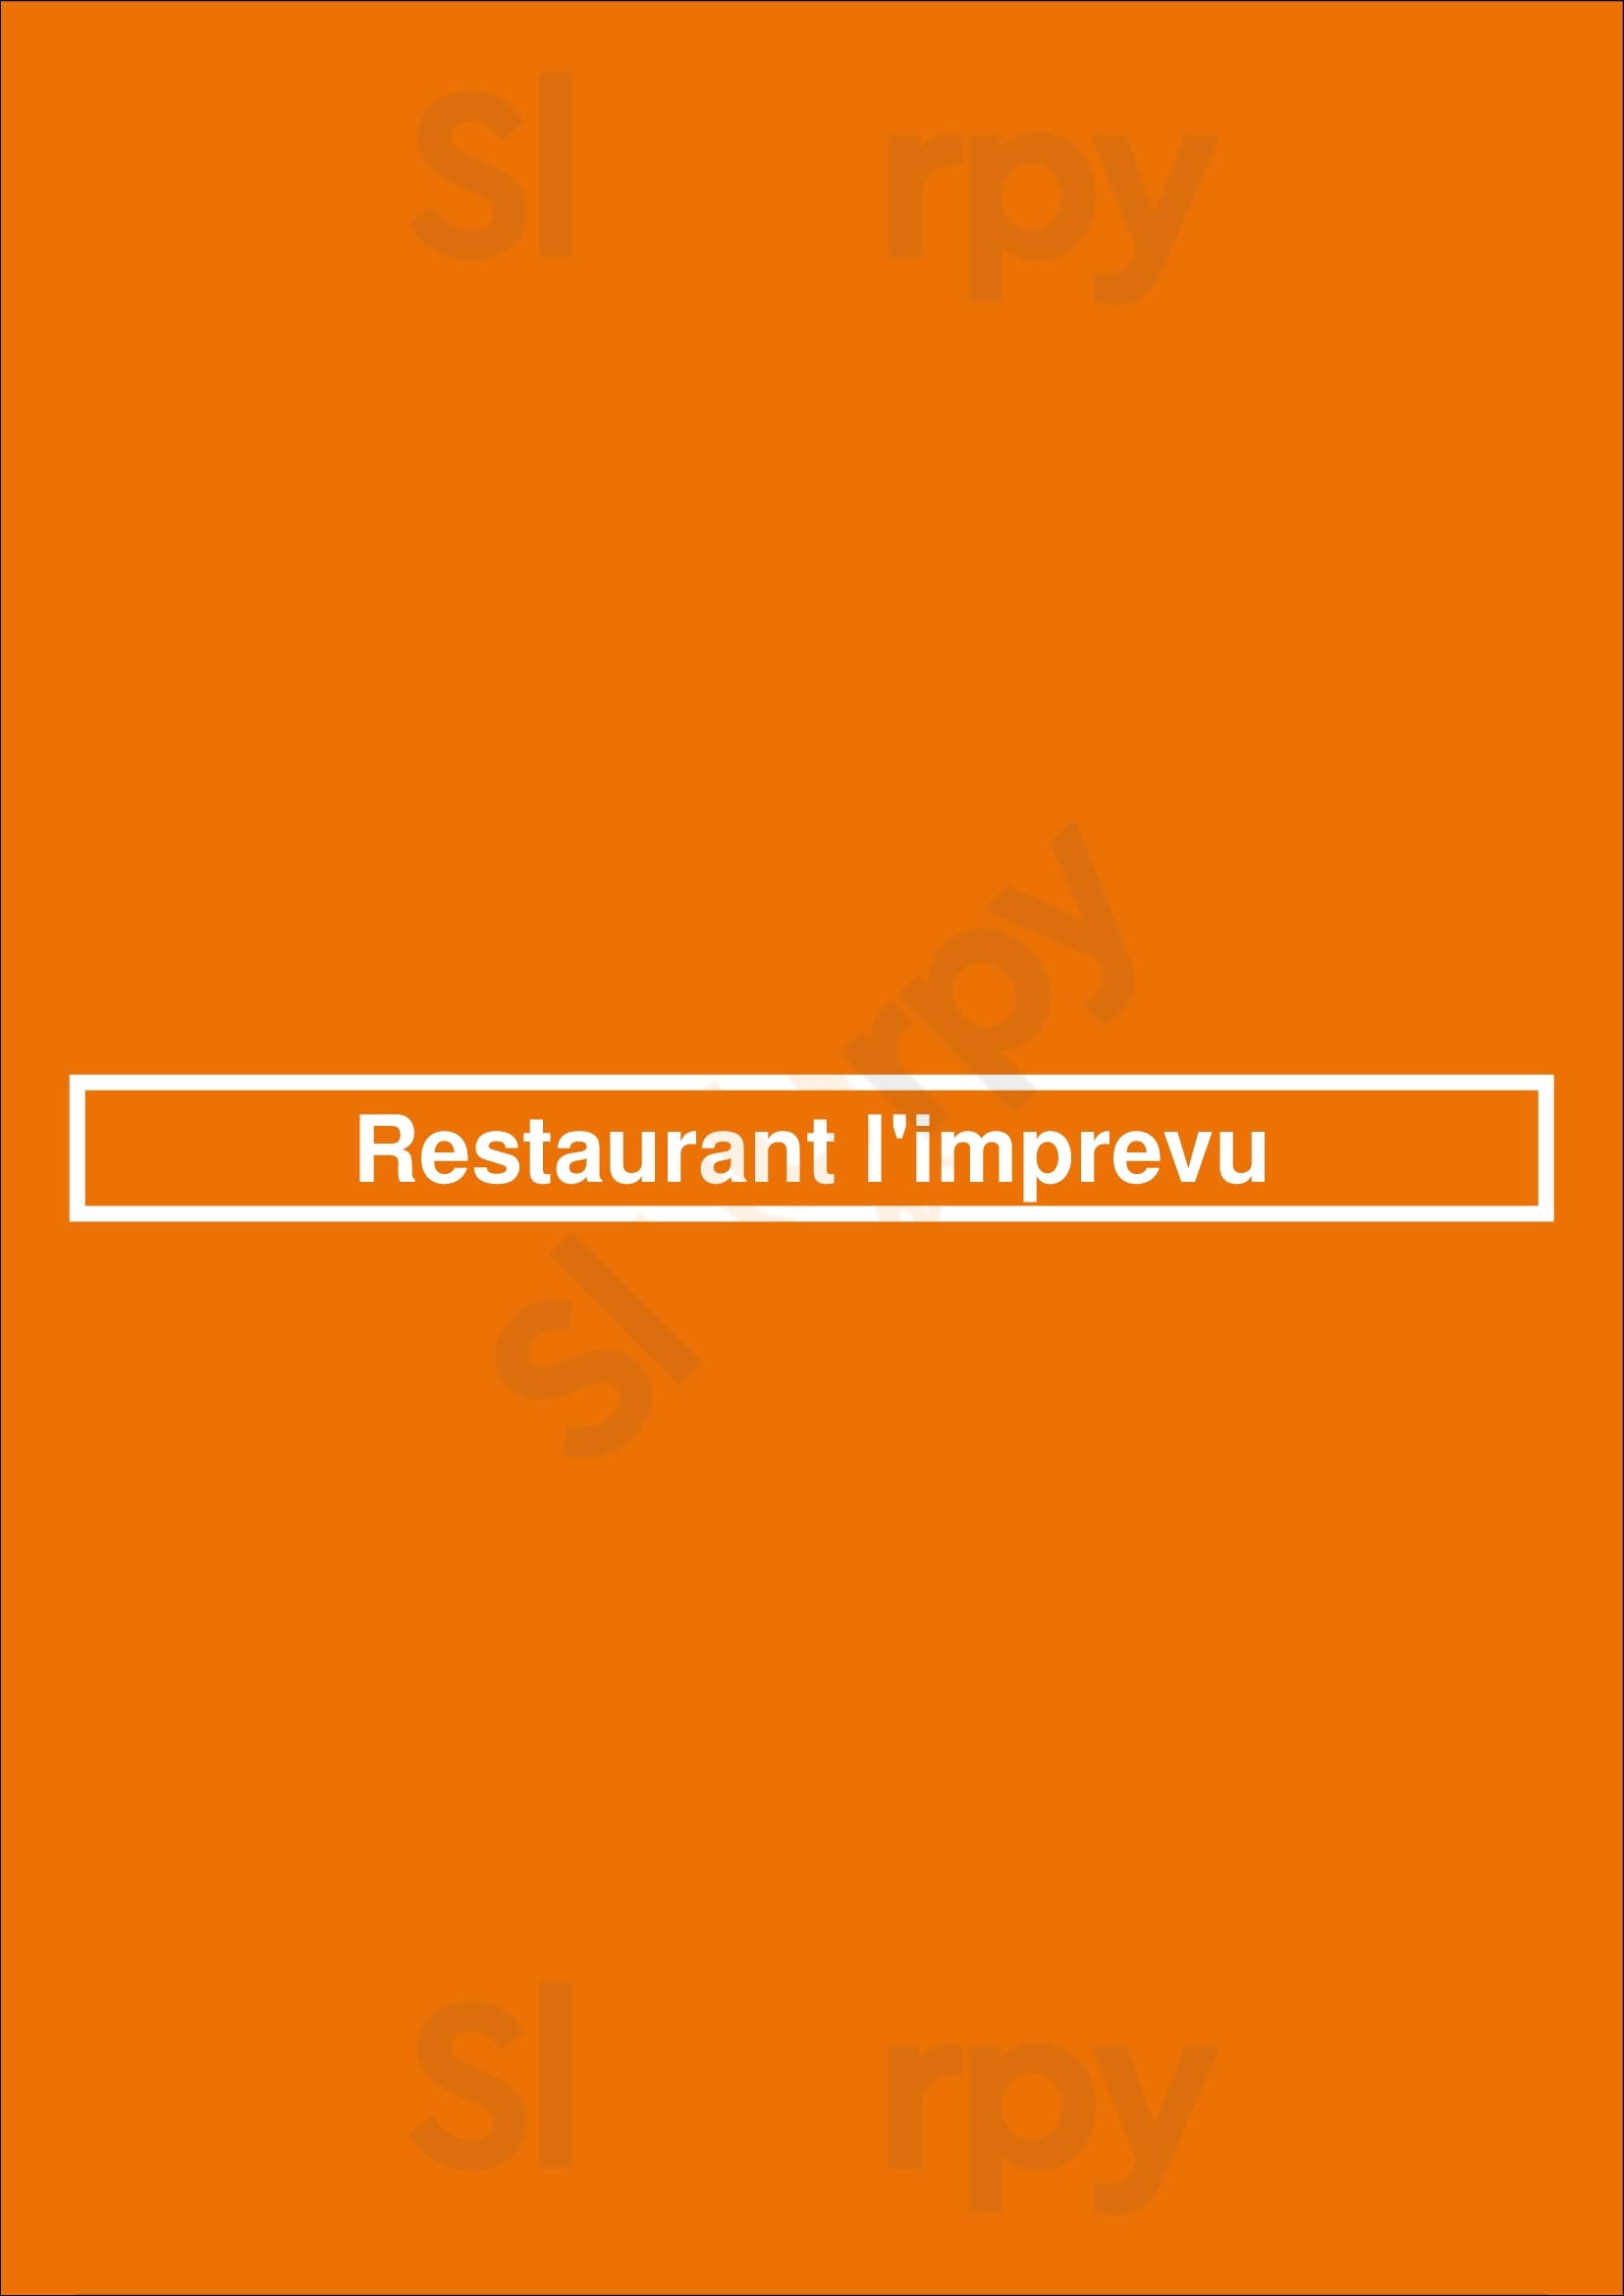 Restaurant L'imprevu 2.0 Saint-Jean-sur-Richelieu Menu - 1